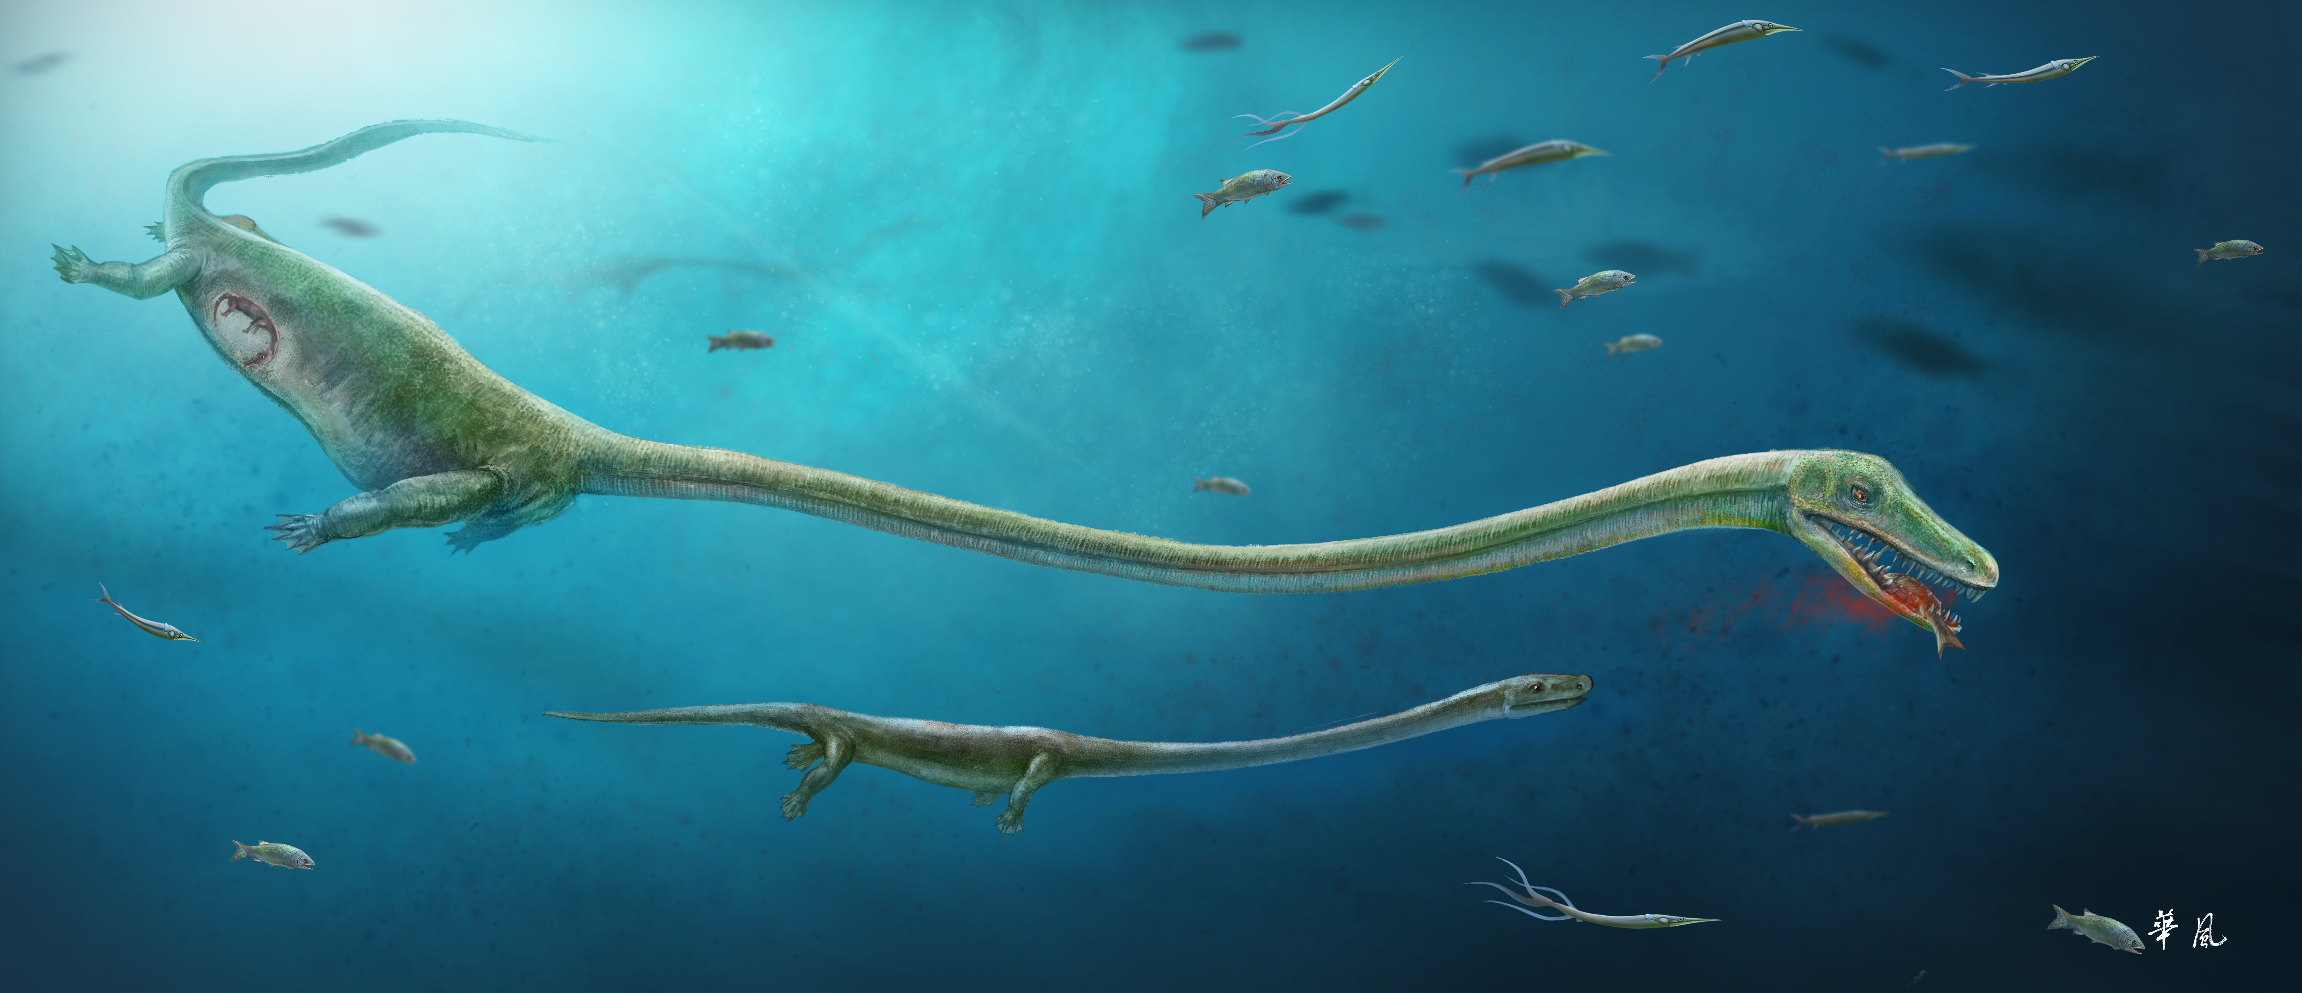 Se ha encontrado un fósil de protosaurio embarazado Une-image-fournie-par-le-magazine-nature-le-9-fevrier-2017-montre-un-dinocephalosaurus-enceinte-attrapant-un-poisson